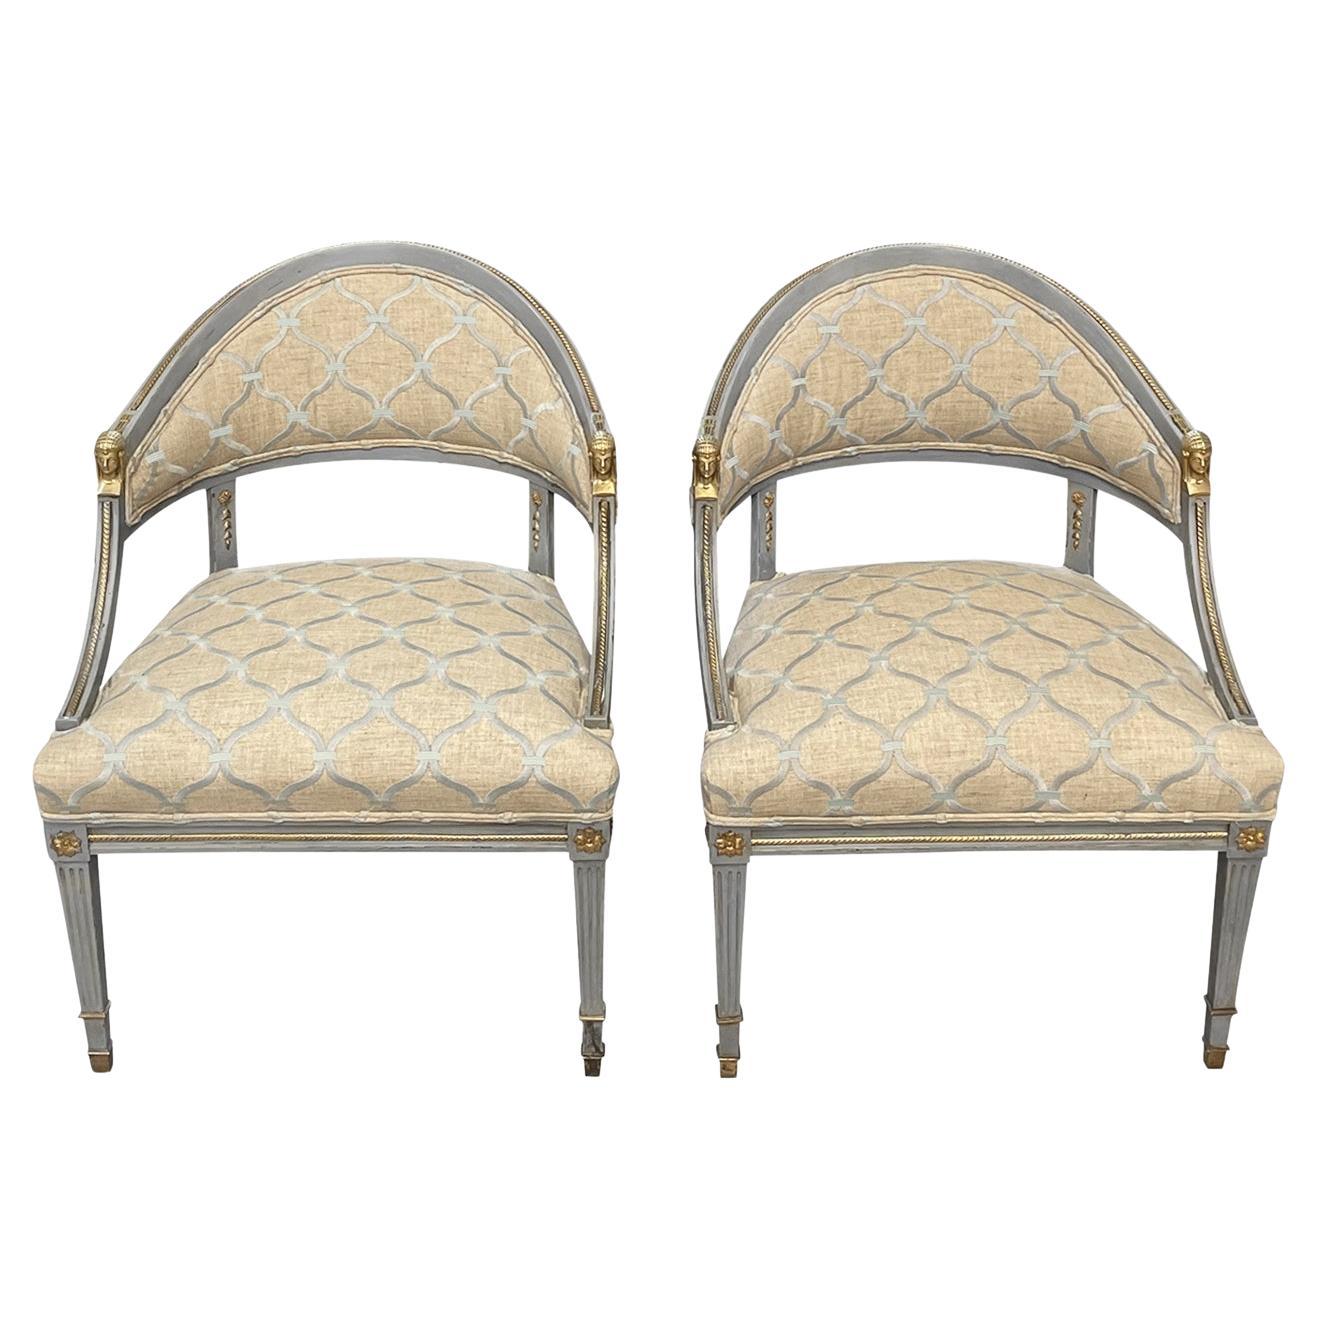 Paire de chaises en bouleau de style gustavien suédois du 19e siècle attribuées à Ephraim Ståhl